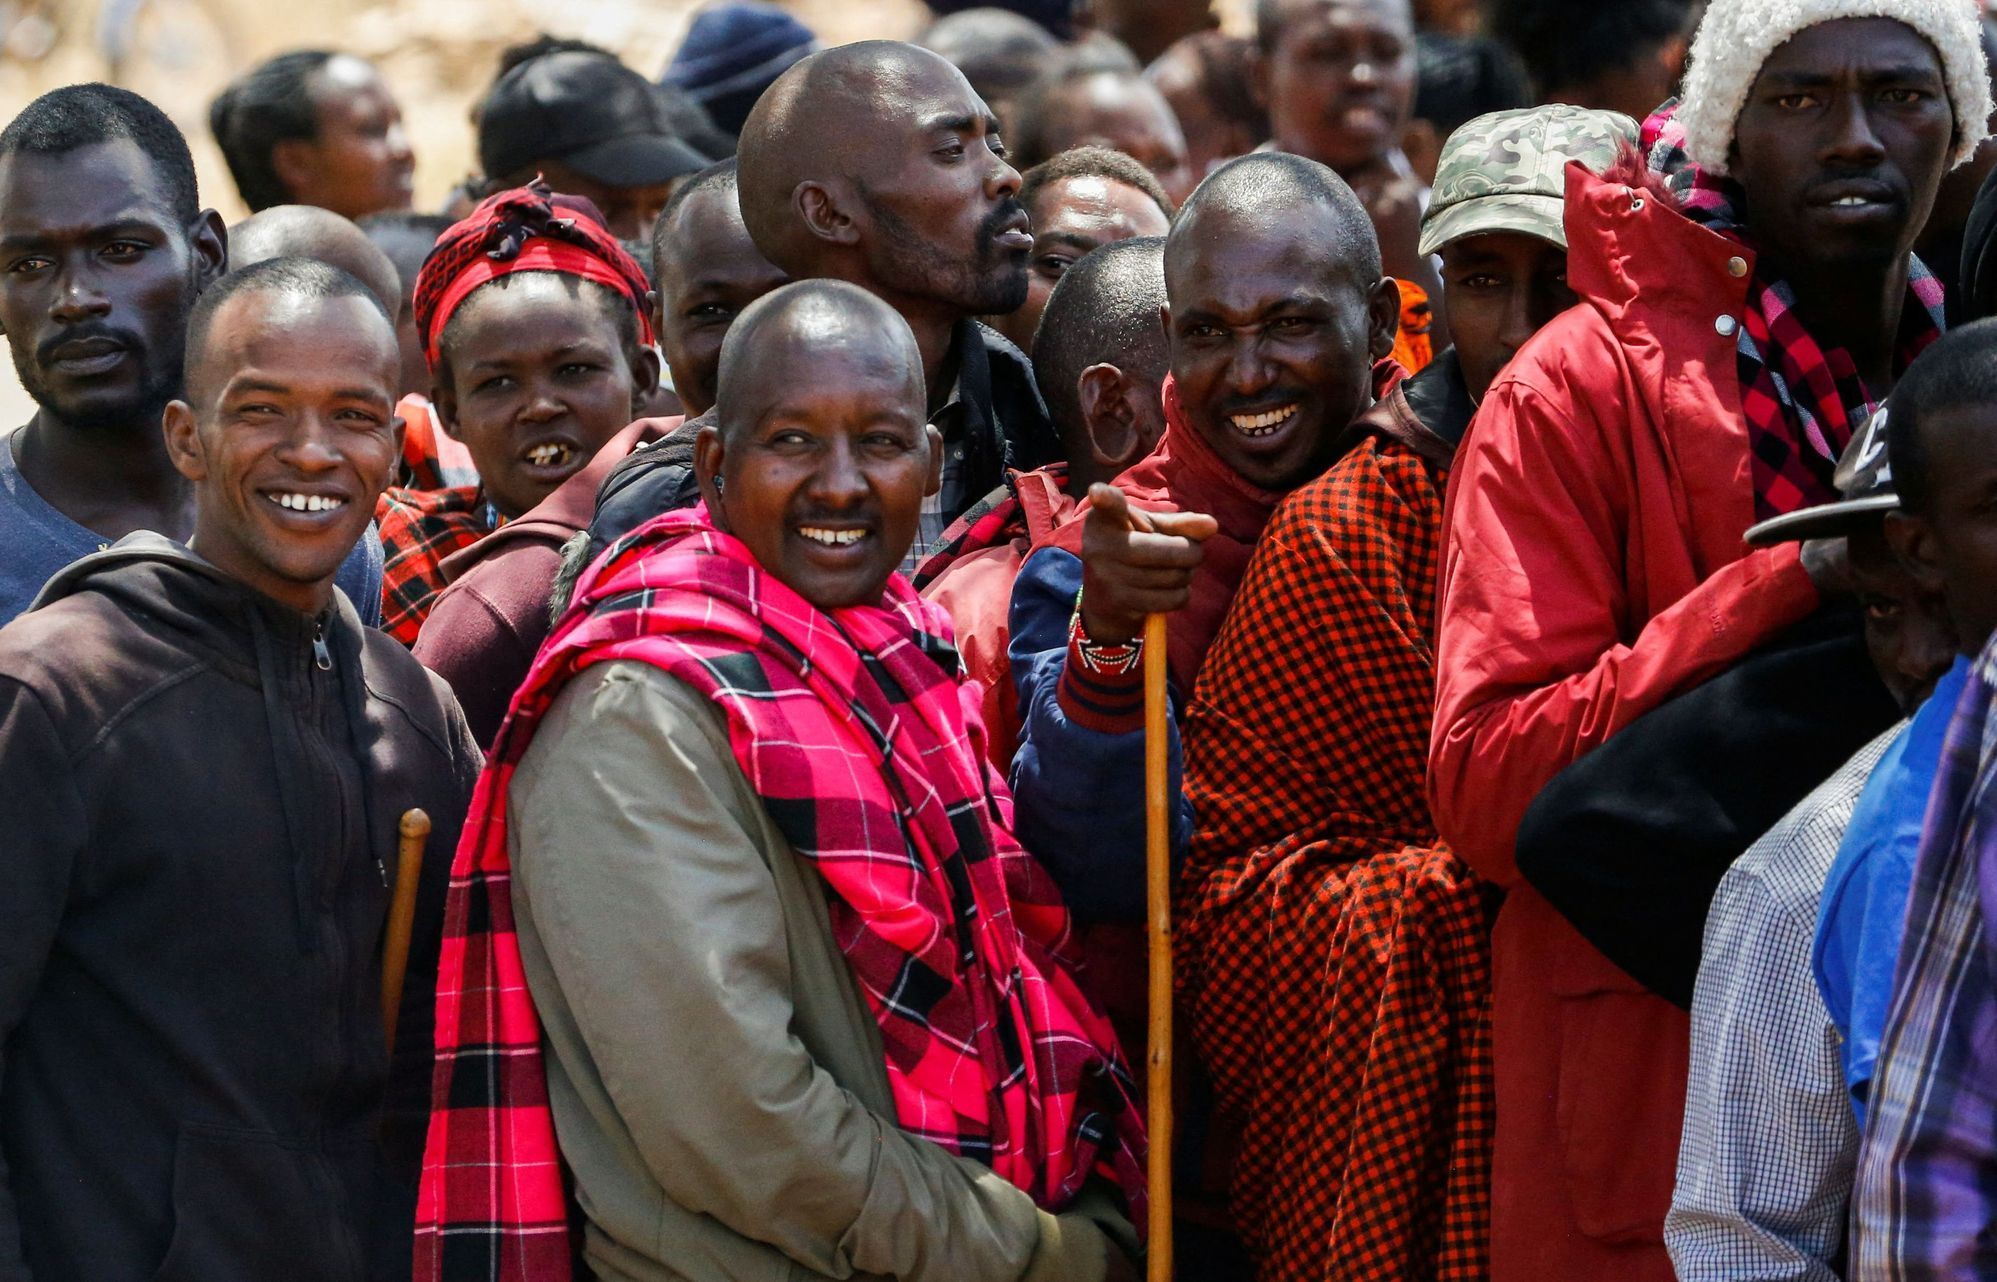 Keňa, Afrika, volby